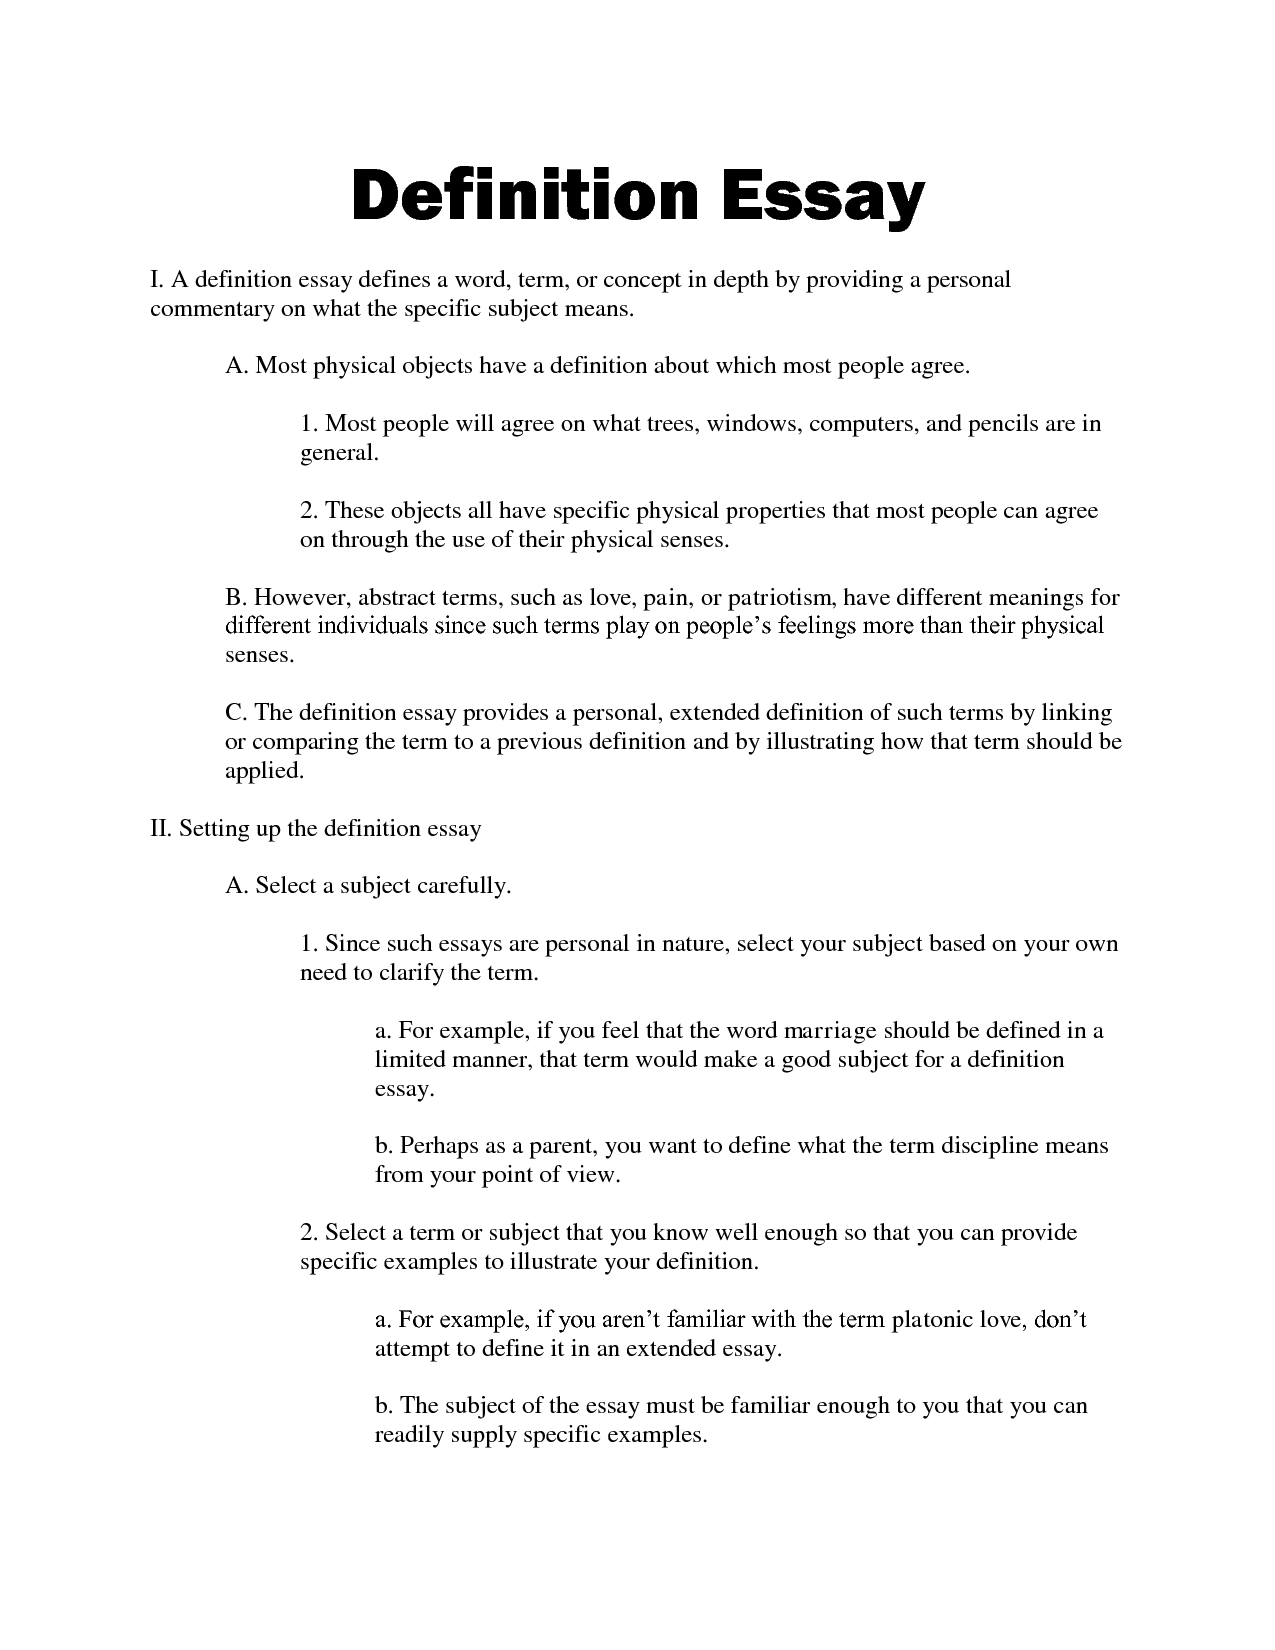 Essay definition